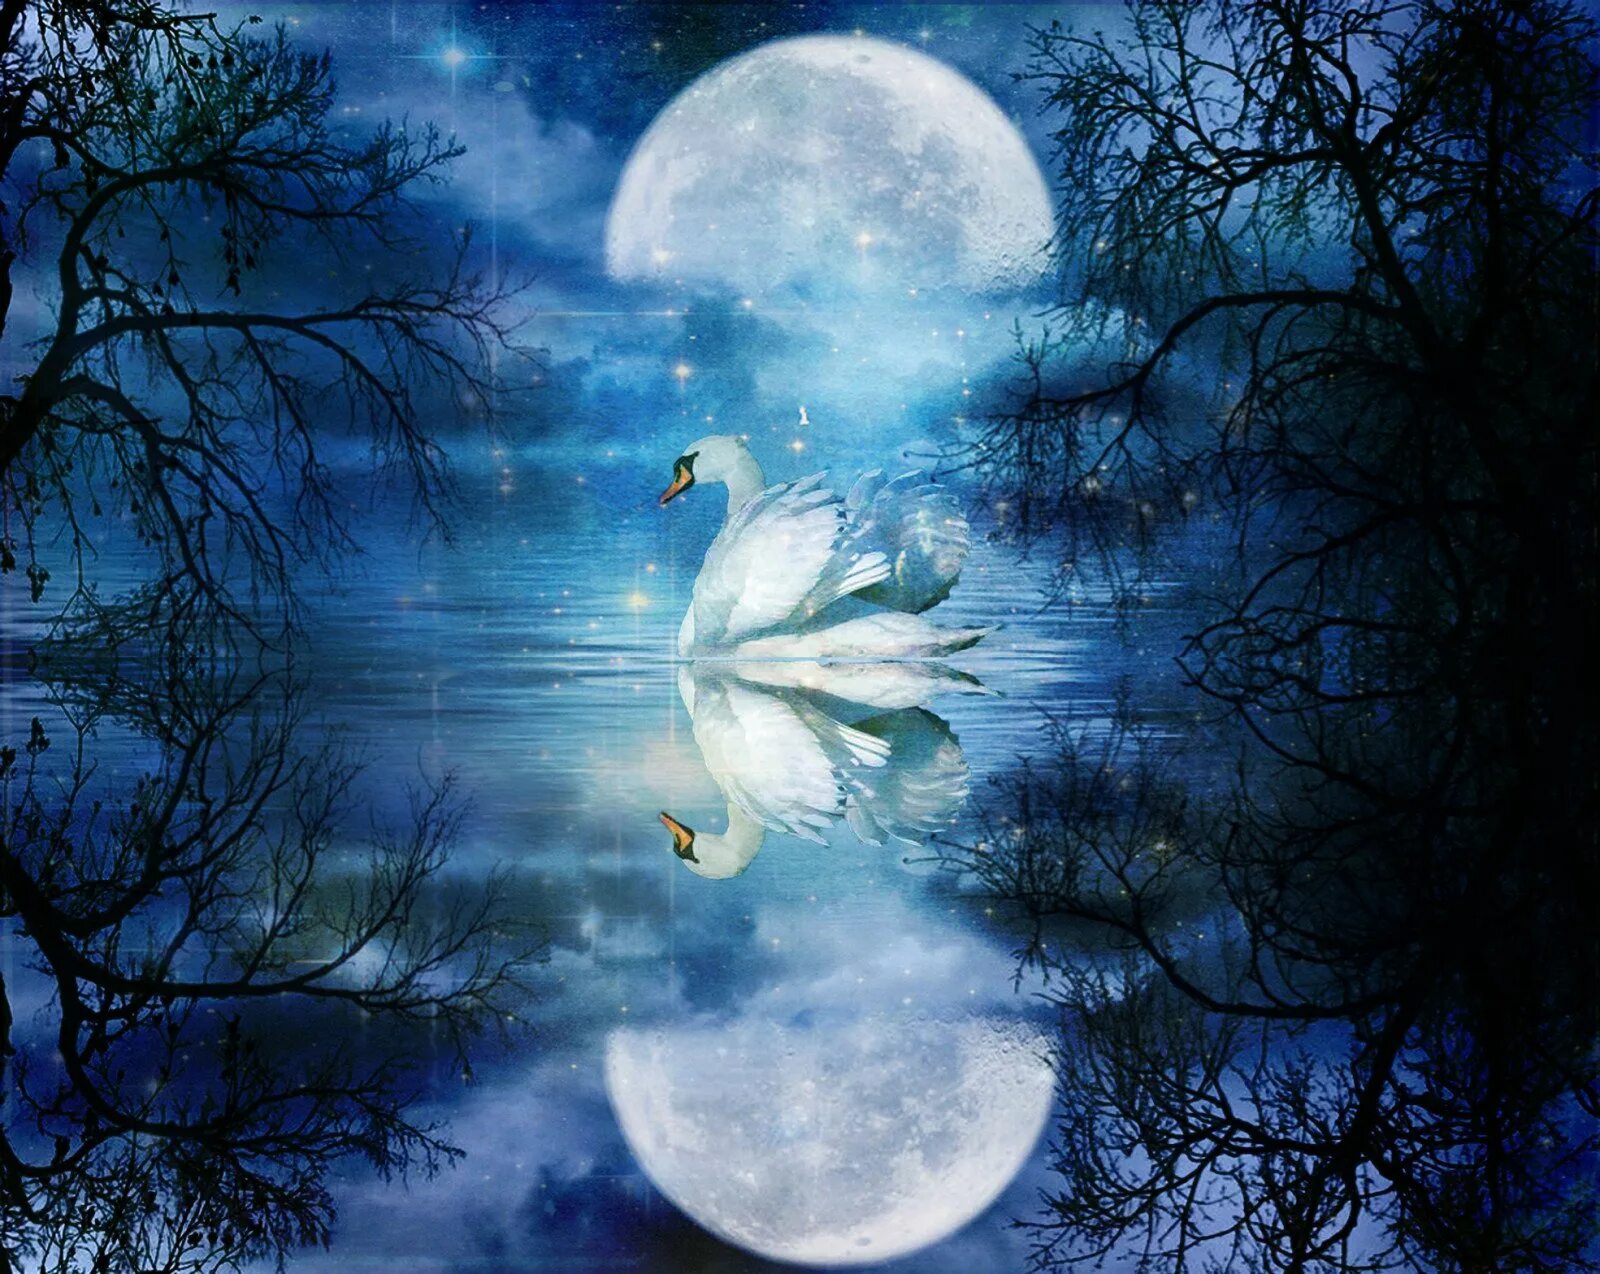 Чудесны лунные мартовские ночи впр 5. Луна и лебеди. Лунная ночь. Сказочная ночь. Сказочное озеро с лебедями.